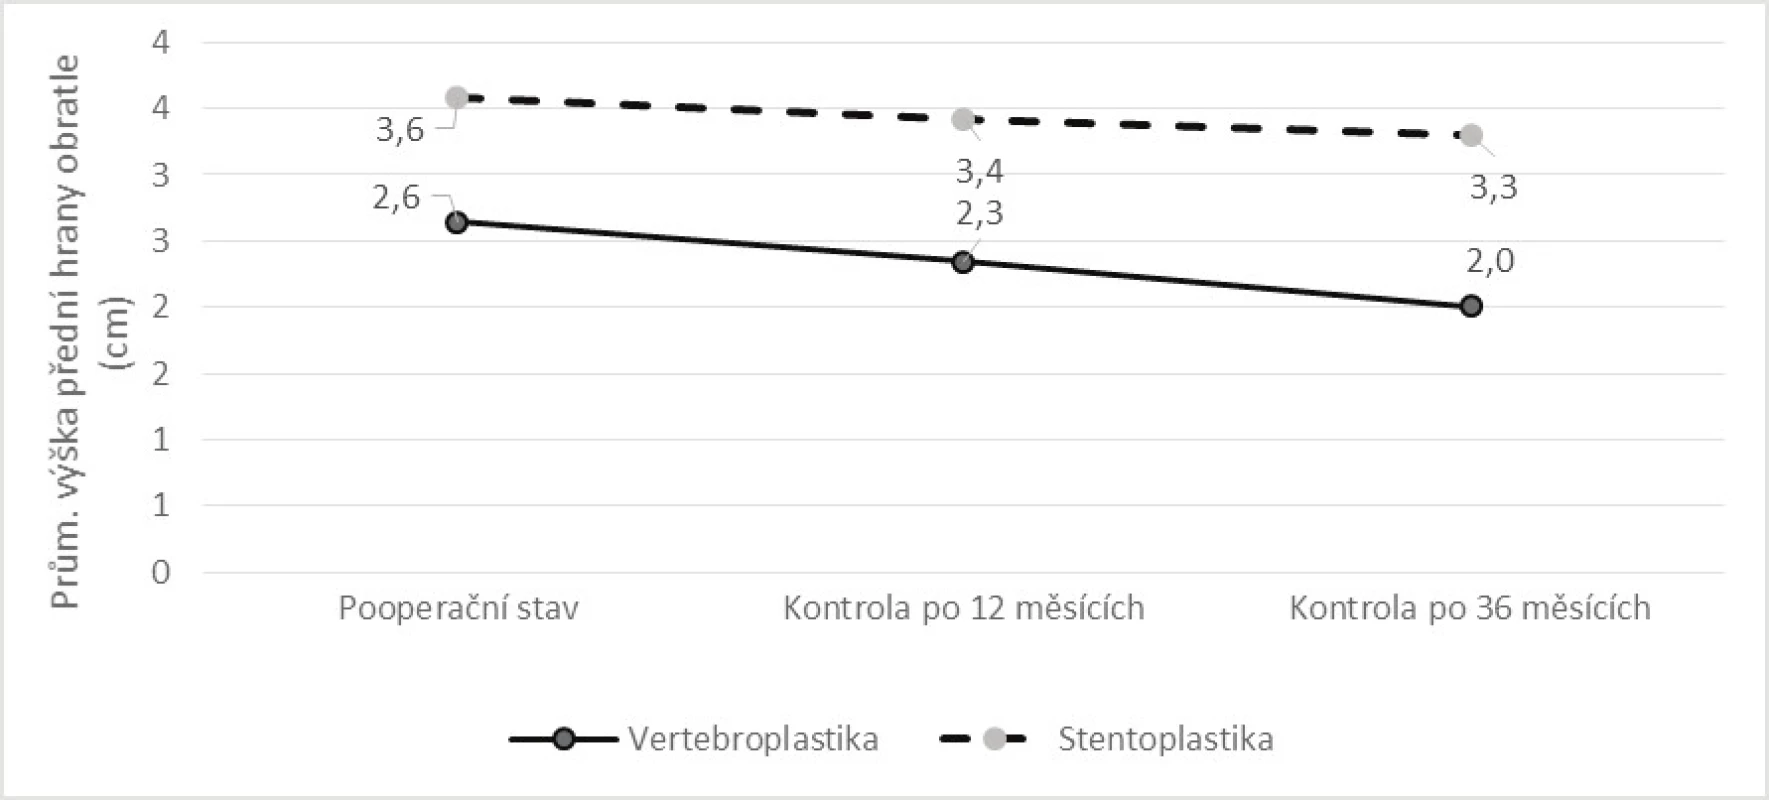 Srovnání vývoje průměrné výšky přední hrany obratlového těla v období od operace do kontroly po 36 měsících dle způsobu léčby